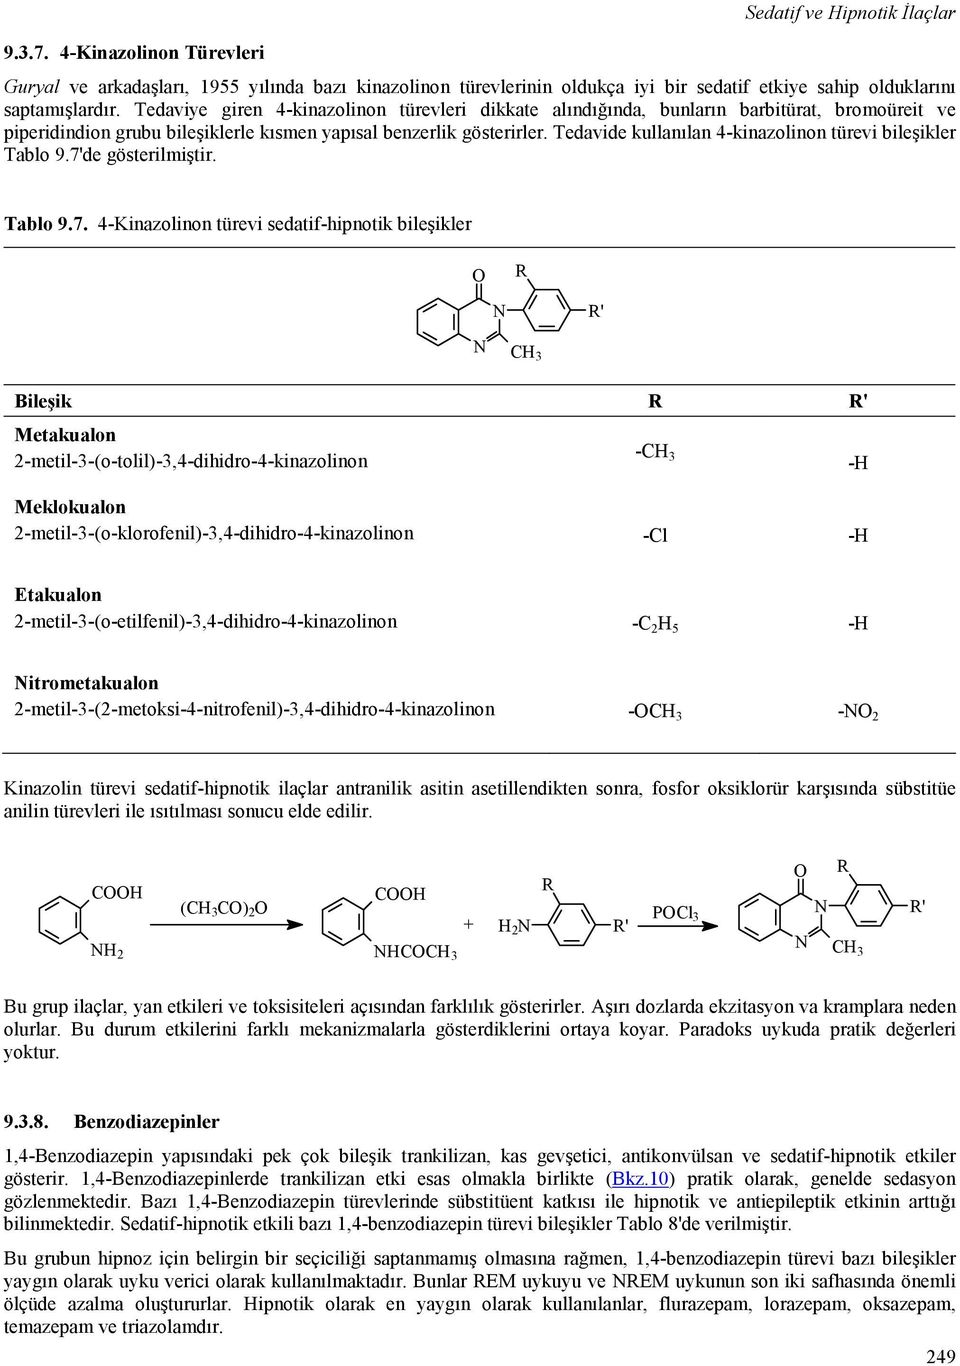 Tedavide kullanılan 4-kinazolinon türevi bileşikler Tablo 9.7'